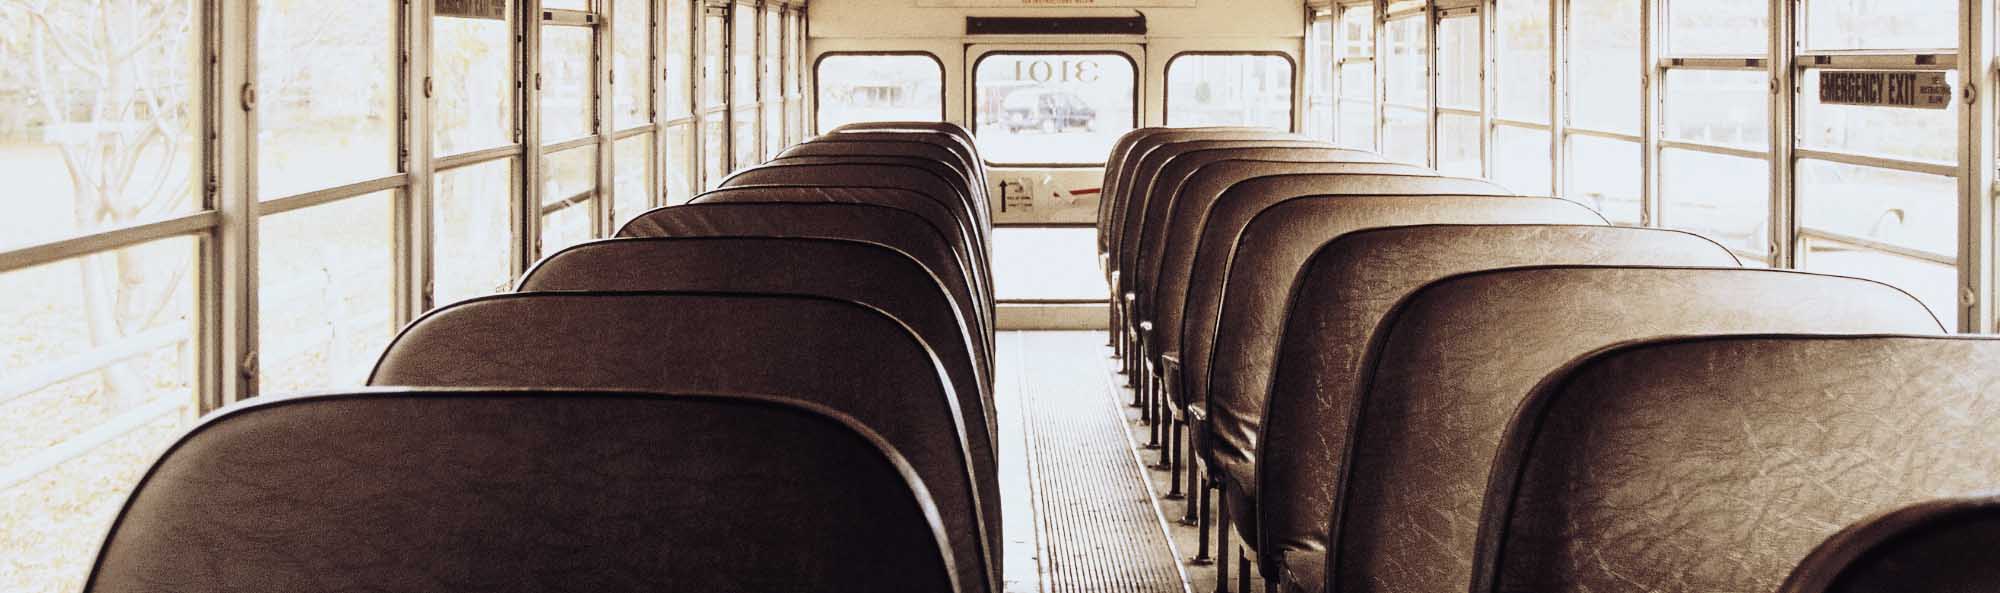 Intérieur d'un autobus scolaire